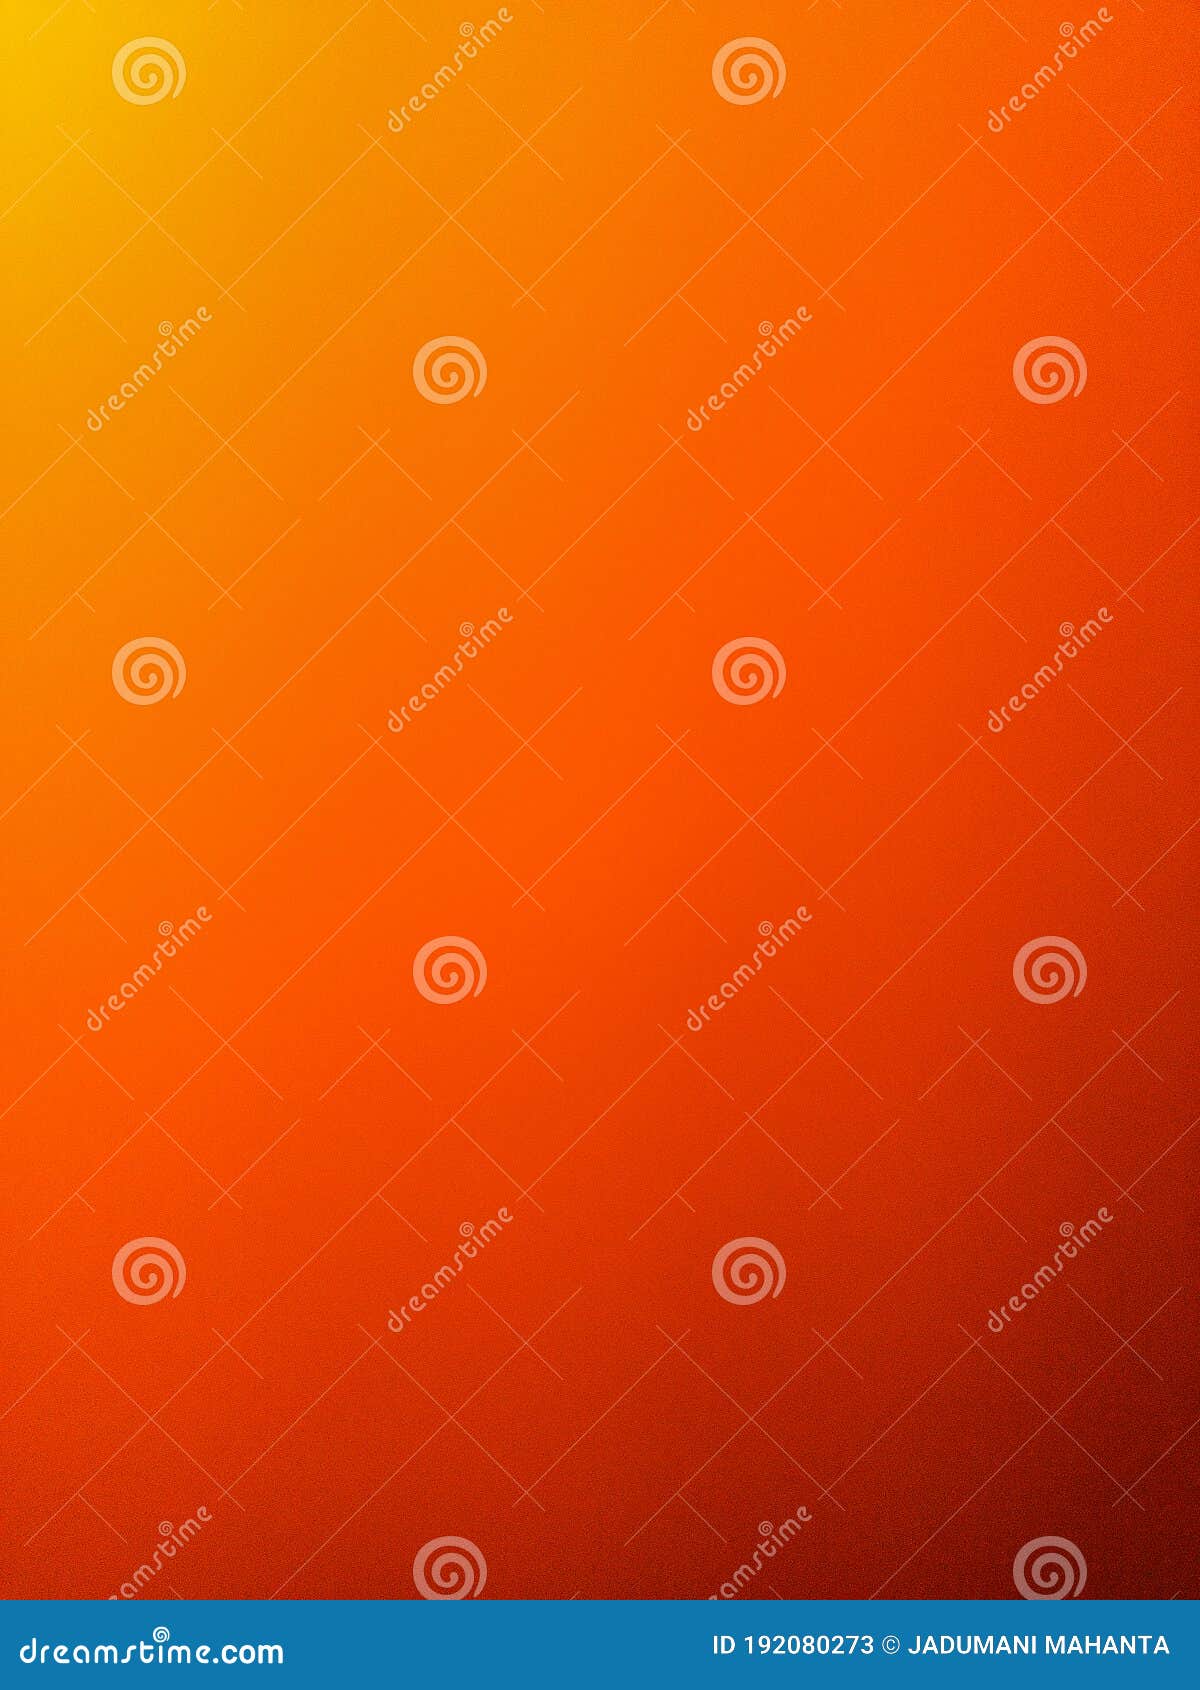 Hình nền màu cam trong tấm ảnh này sẽ khiến bạn muốn lắm ngay lập tức để sử dụng nó. Sự pha trộn giữa màu trắng và màu cam tạo nên một sự cân bằng hoàn hảo, khiến bạn cảm thấy thật sự thư giãn khi nhìn vào chiếc điện thoại của mình.